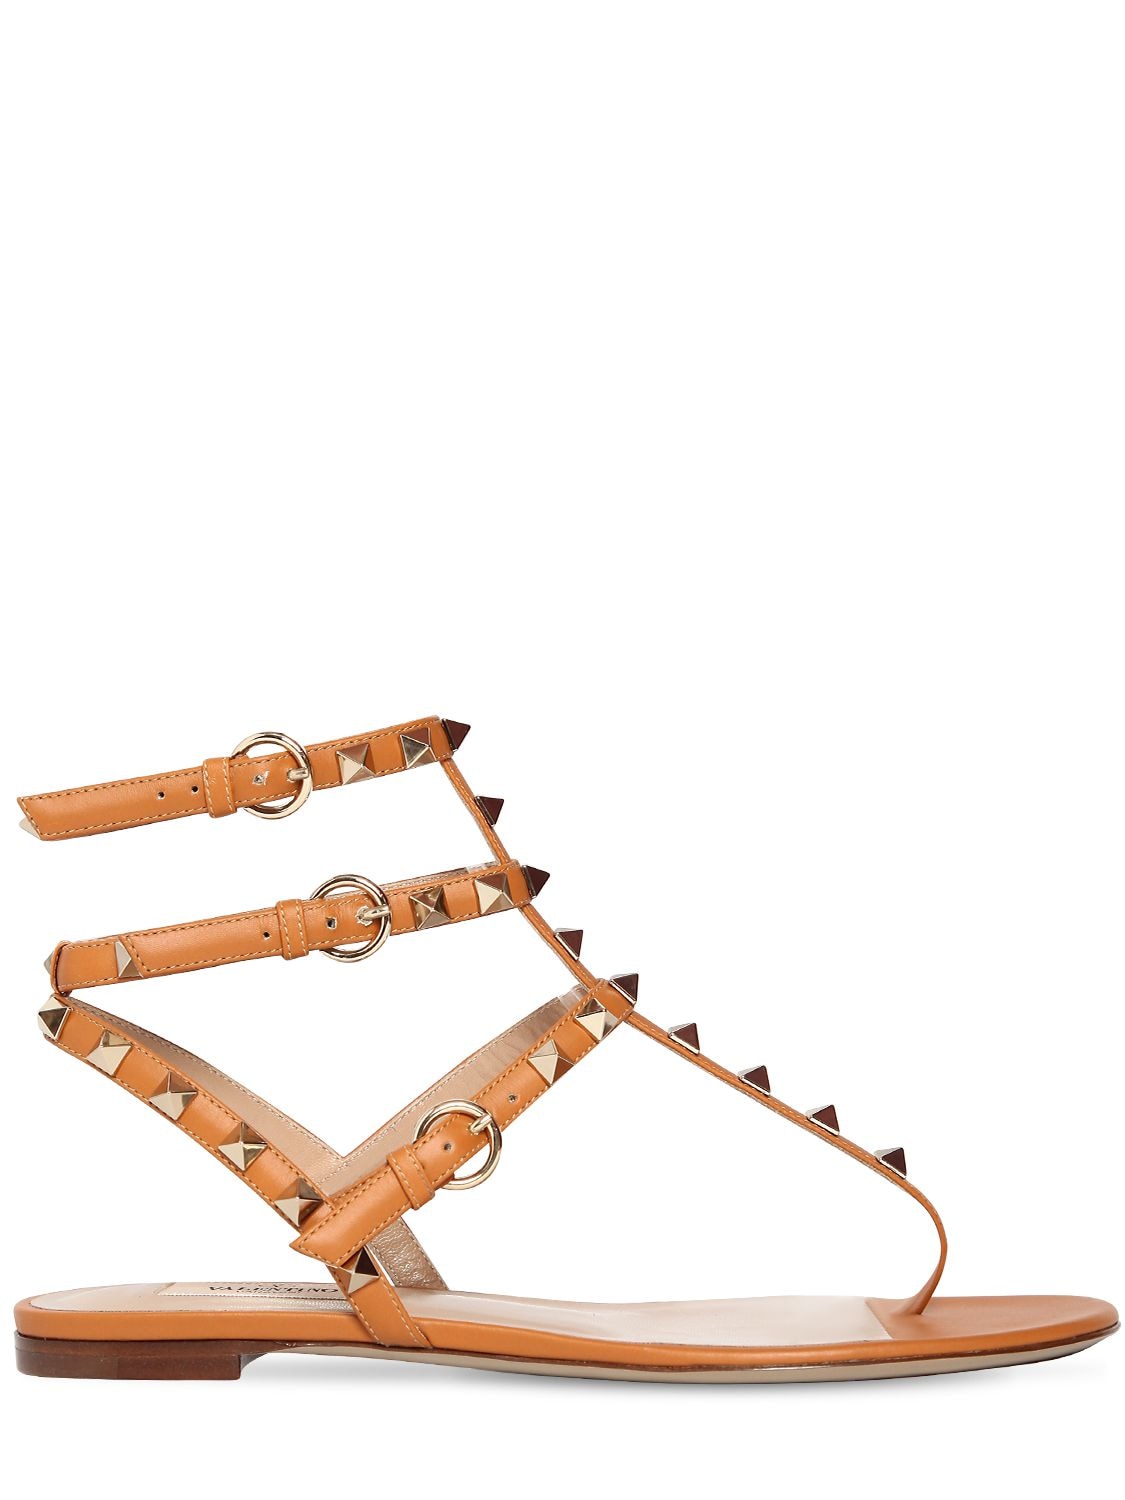 Valentino Garavani 10mm Rockstud Leather Sandals In Tan